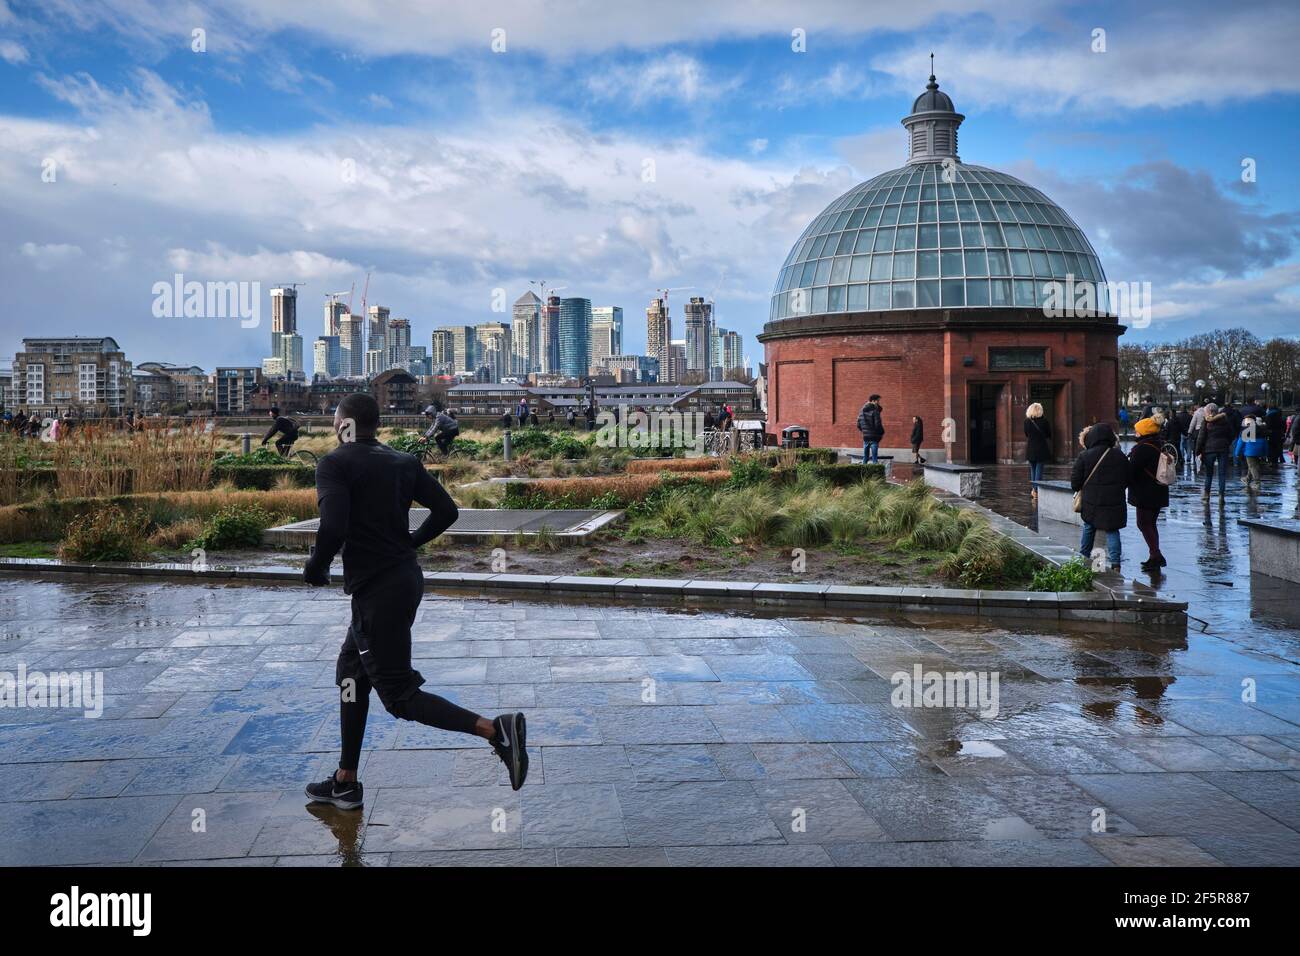 Mann, der auf einem nassen Pfad in Greenwich läuft. London. Finanzviertel Canary Wharf im Hintergrund. Stockfoto